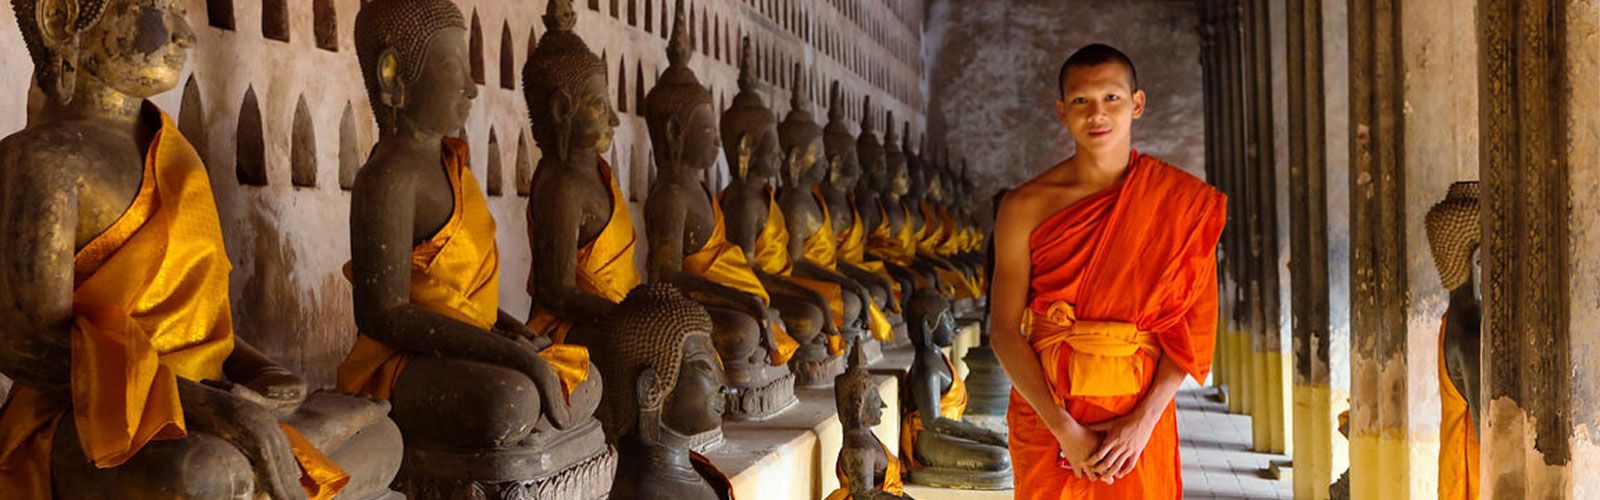 Vientiane Travel Guide | Asianventure Tours